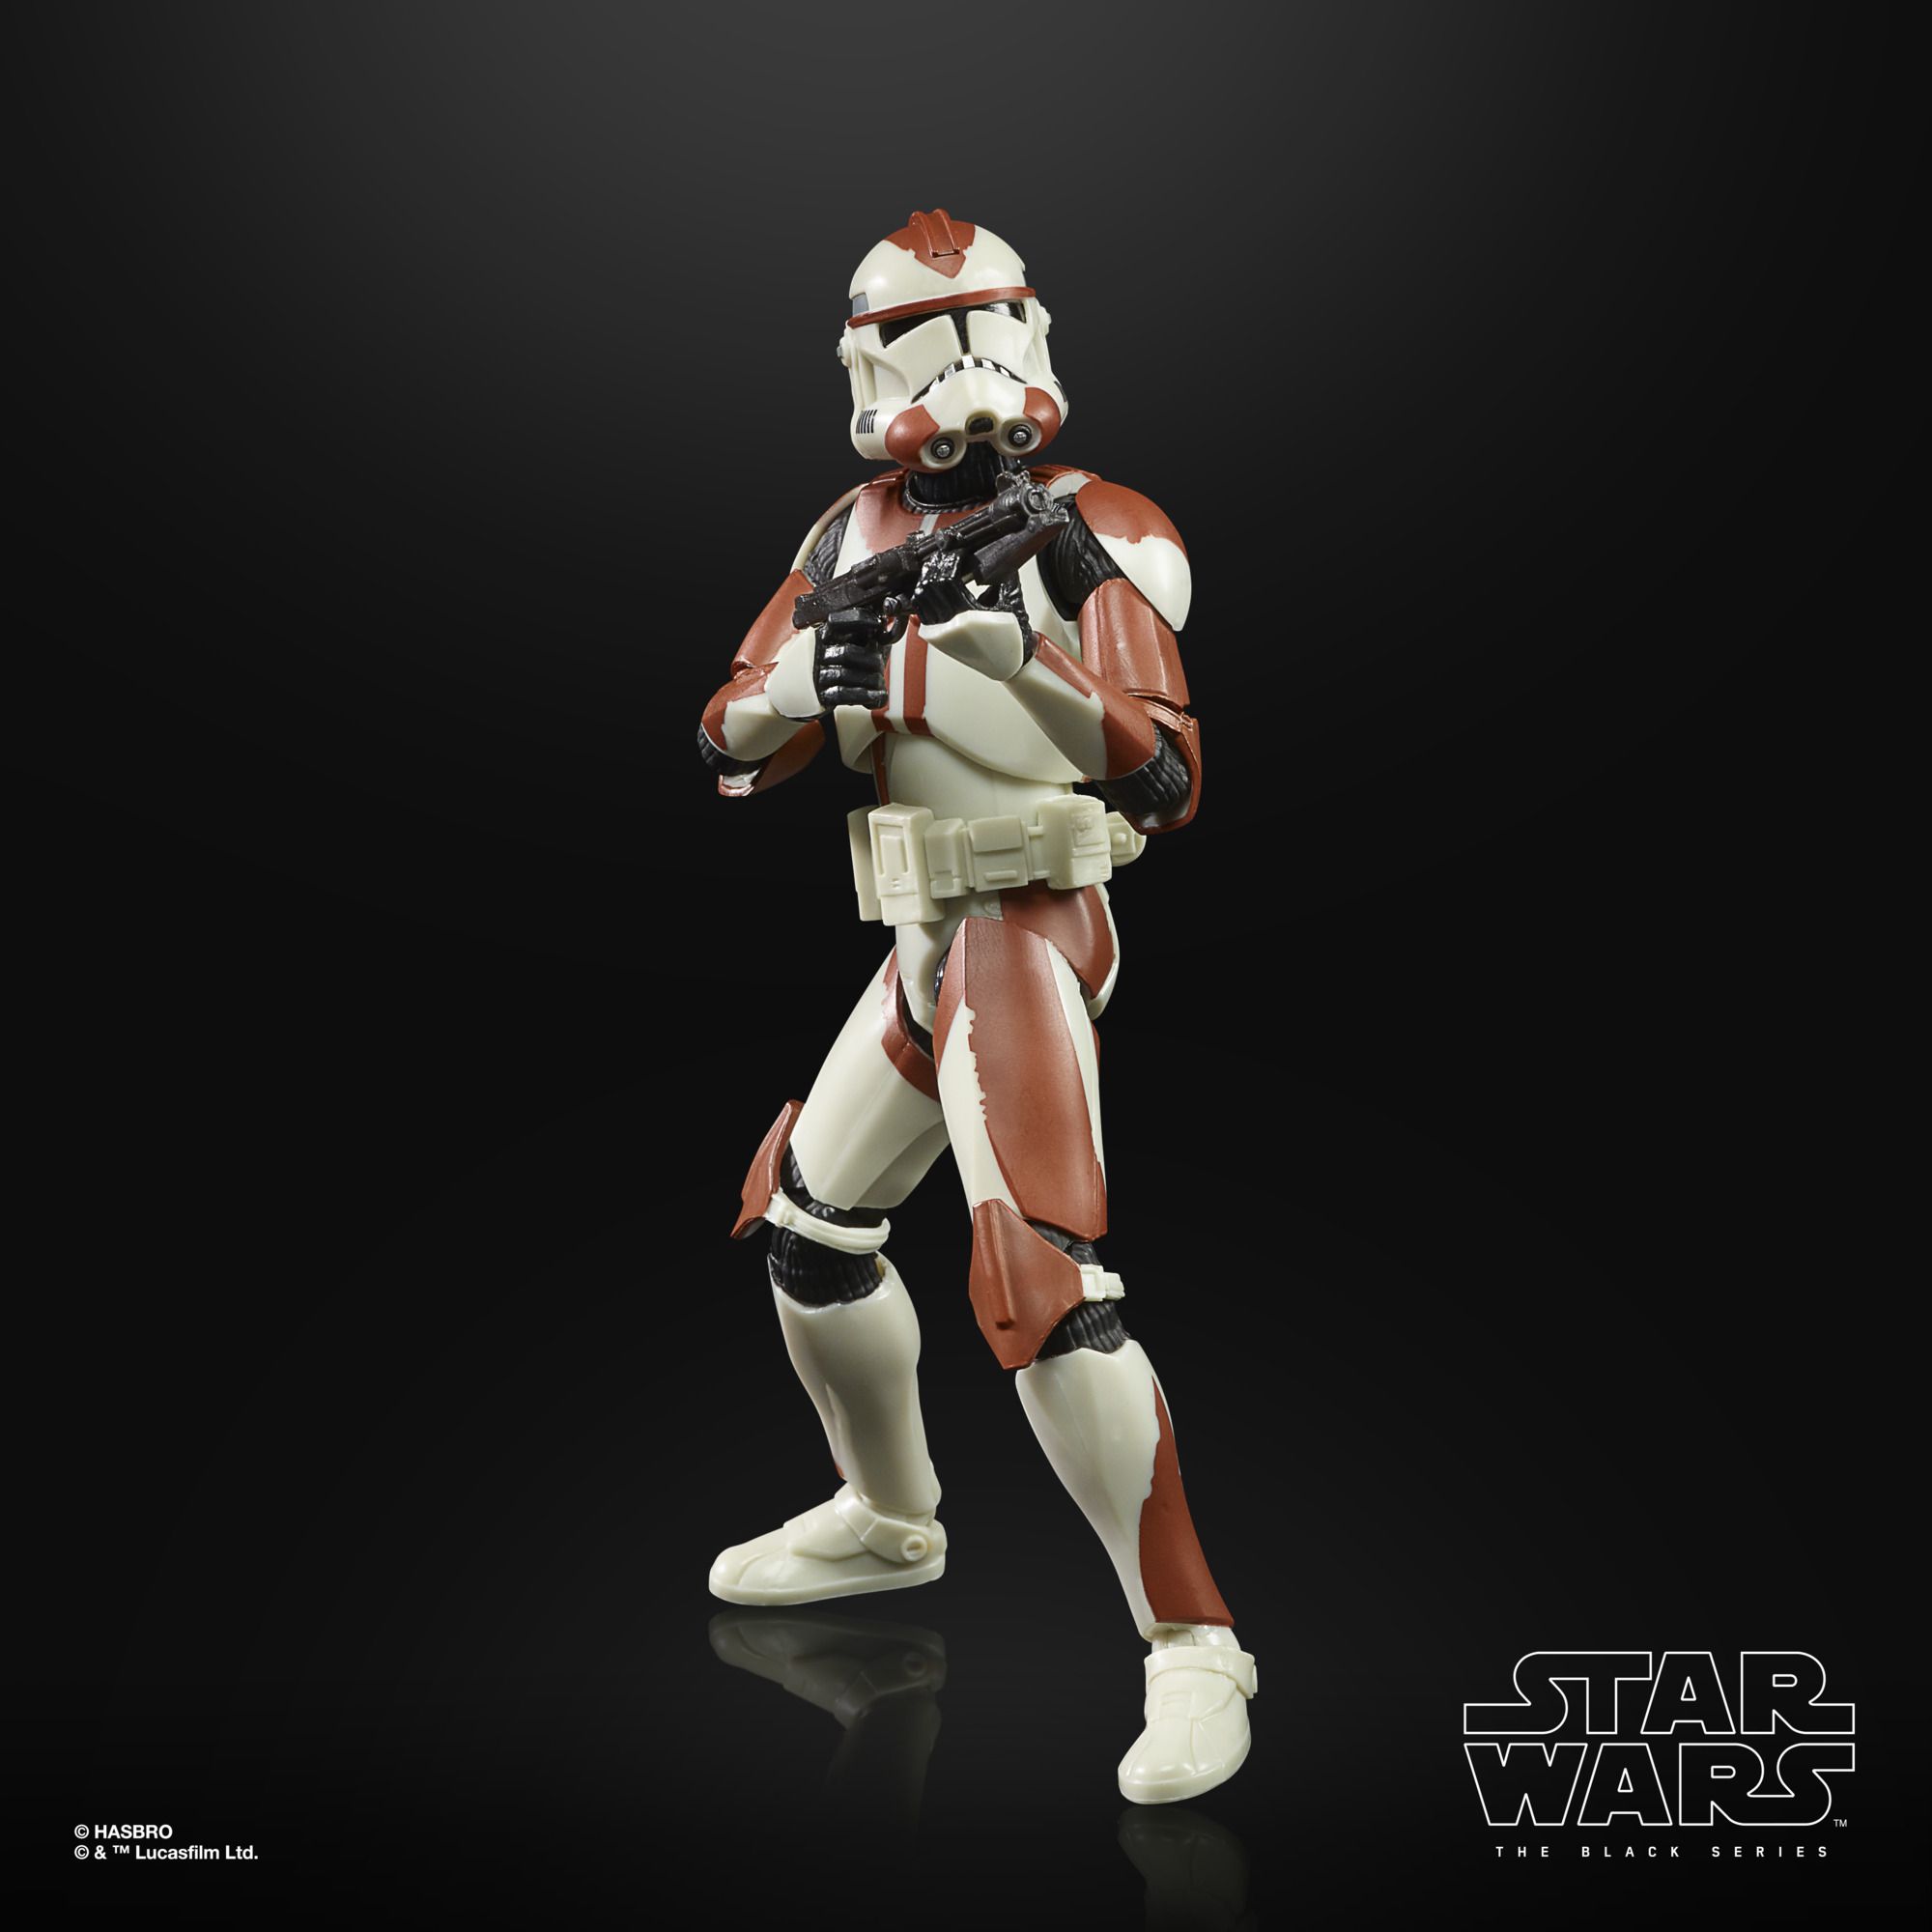 VP leicht beschädigt!!! Star Wars The Black Series Actionfigur Clone Trooper (187th Battalion)  F55995L0 5010994141691